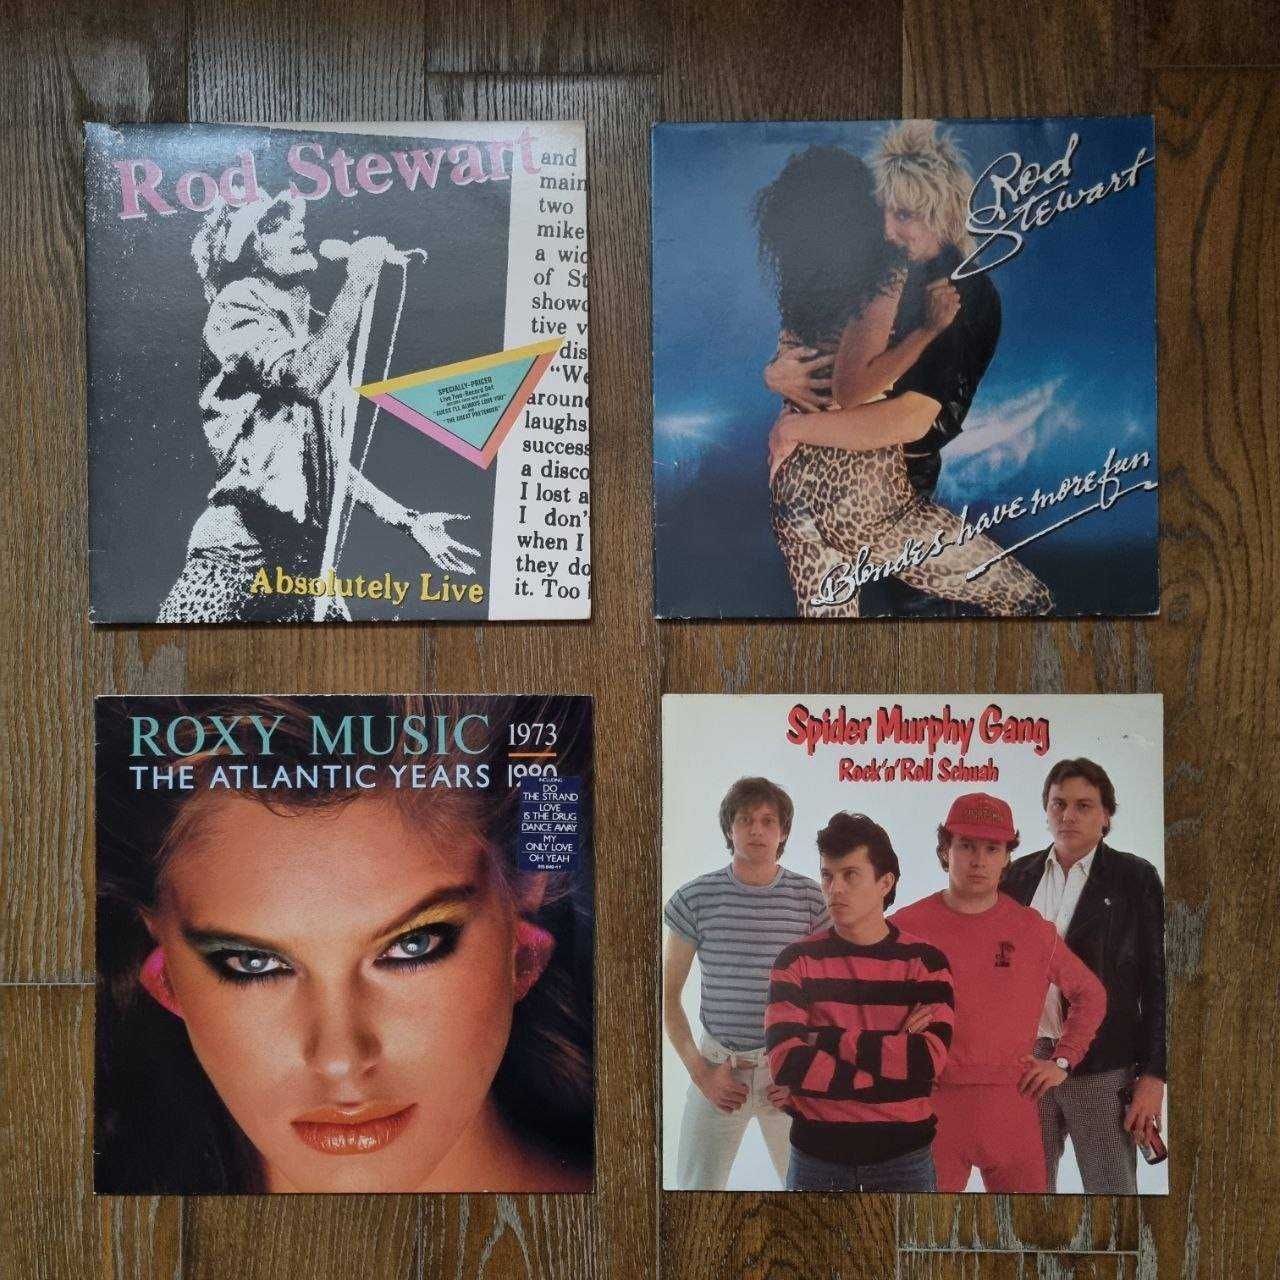 Elvis, Pink Floyd, The Doors, Iron Maiden, Jean-Michel Jarre LP